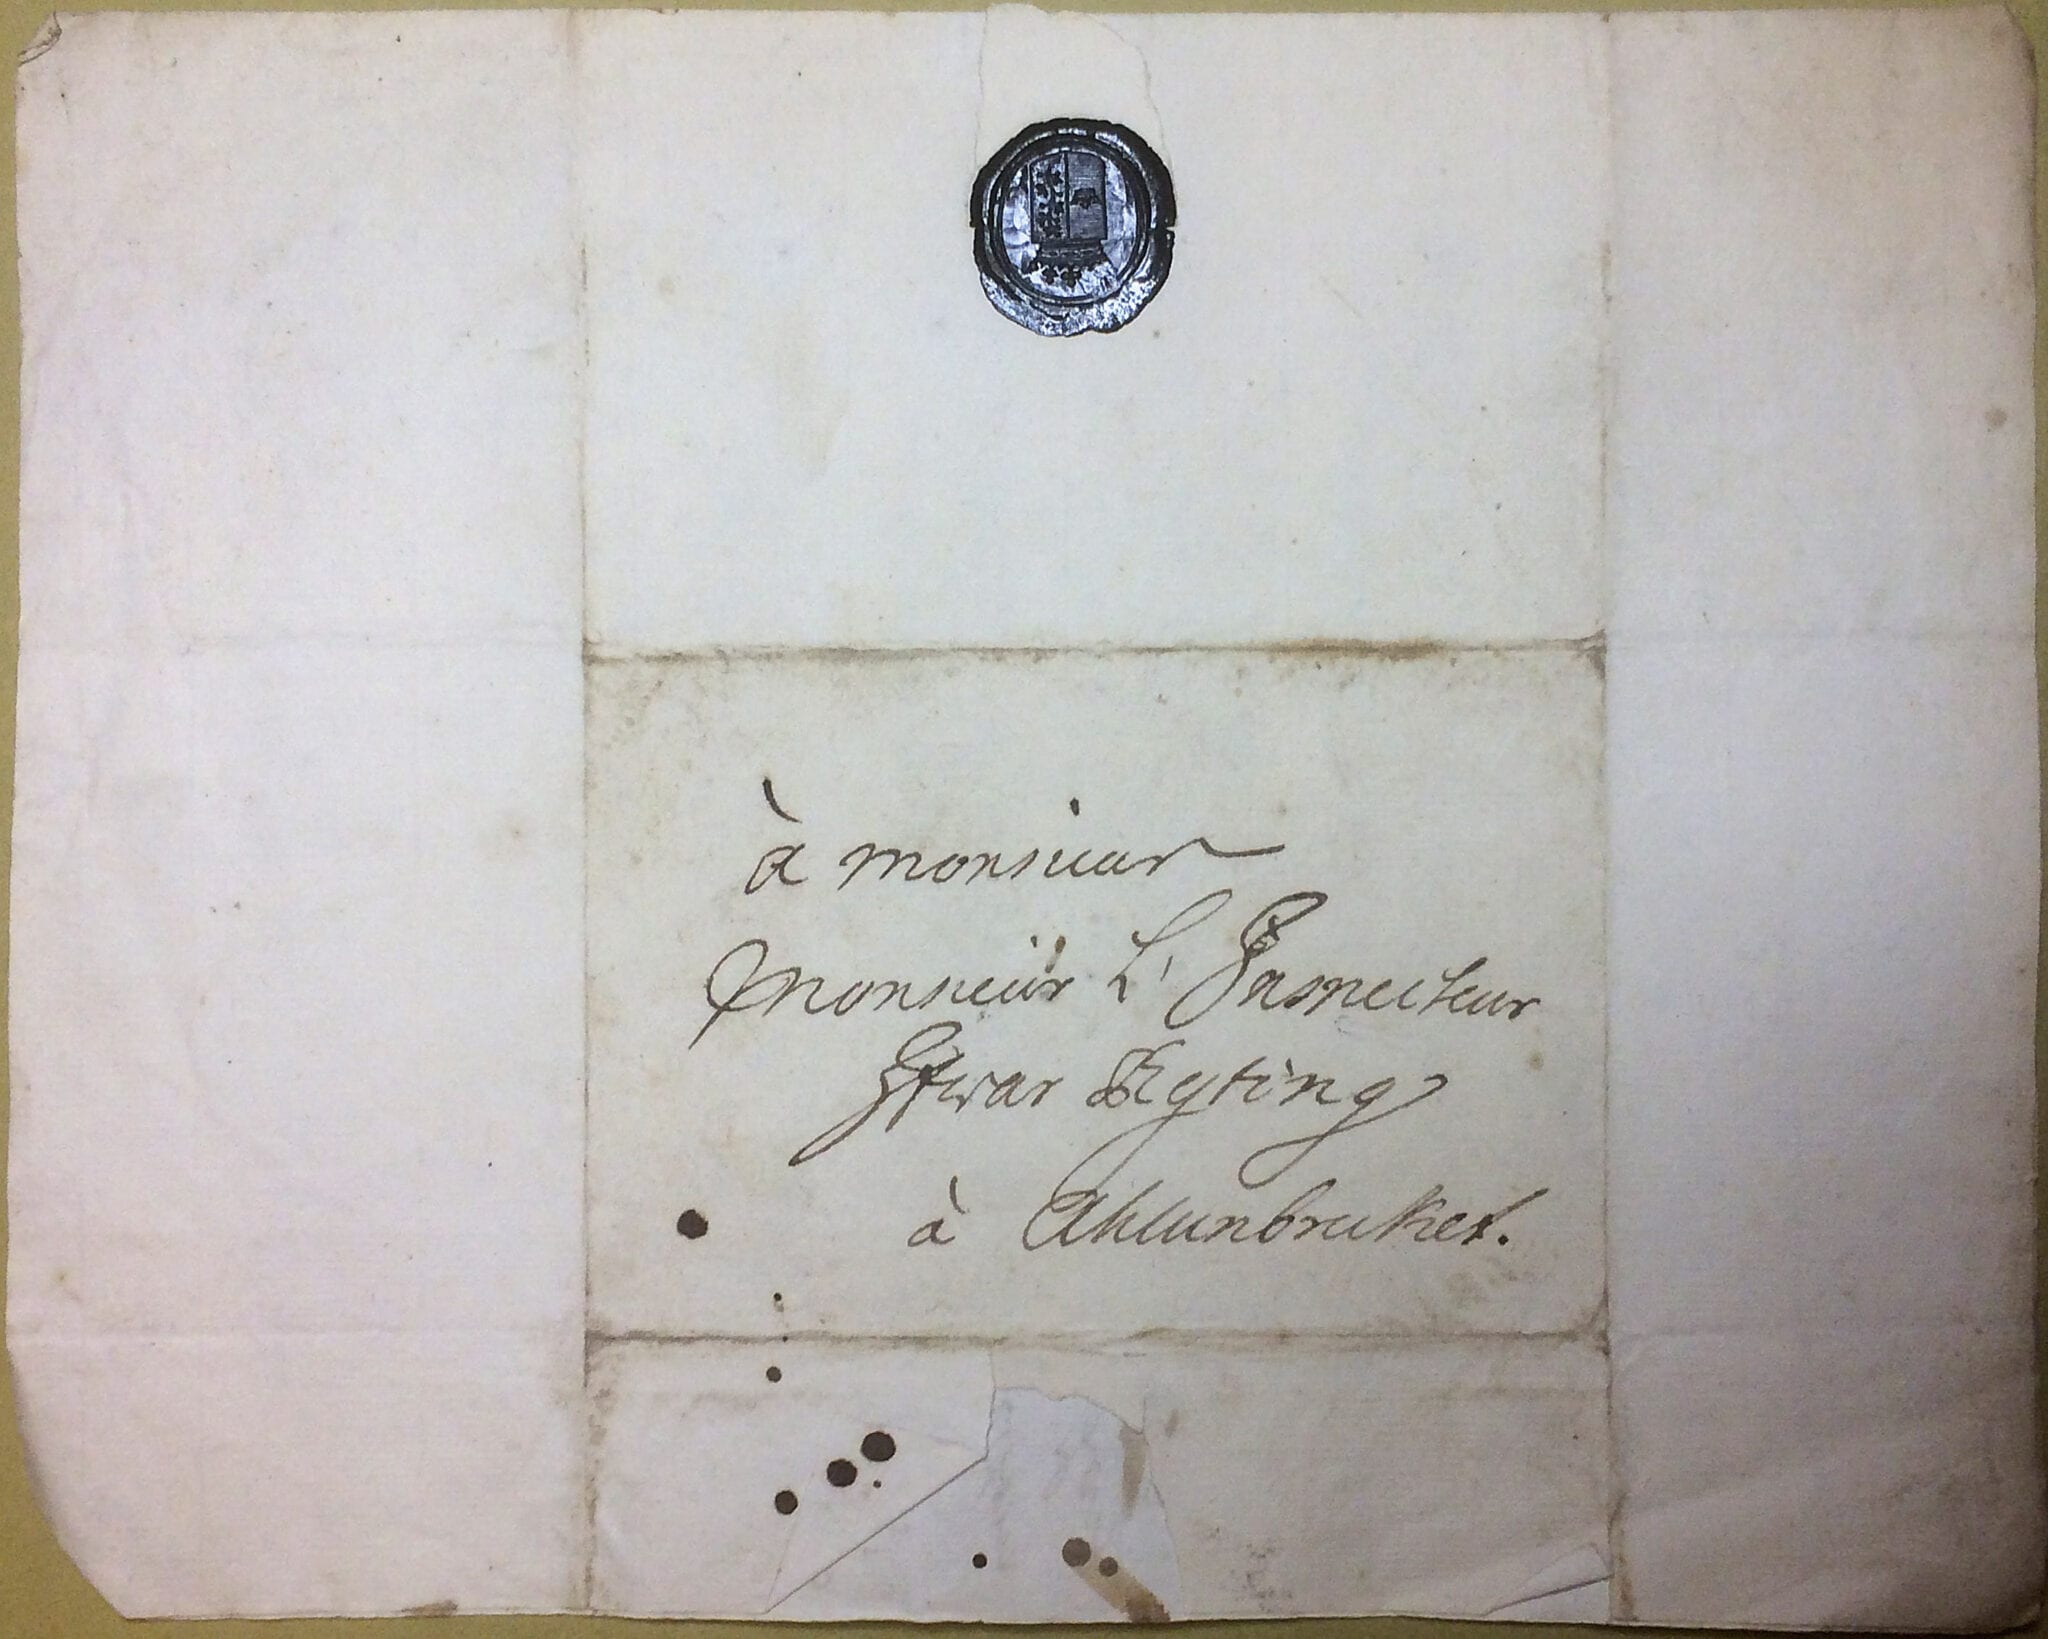 Christina Piper brev 11 januari 1740 Arkivet för